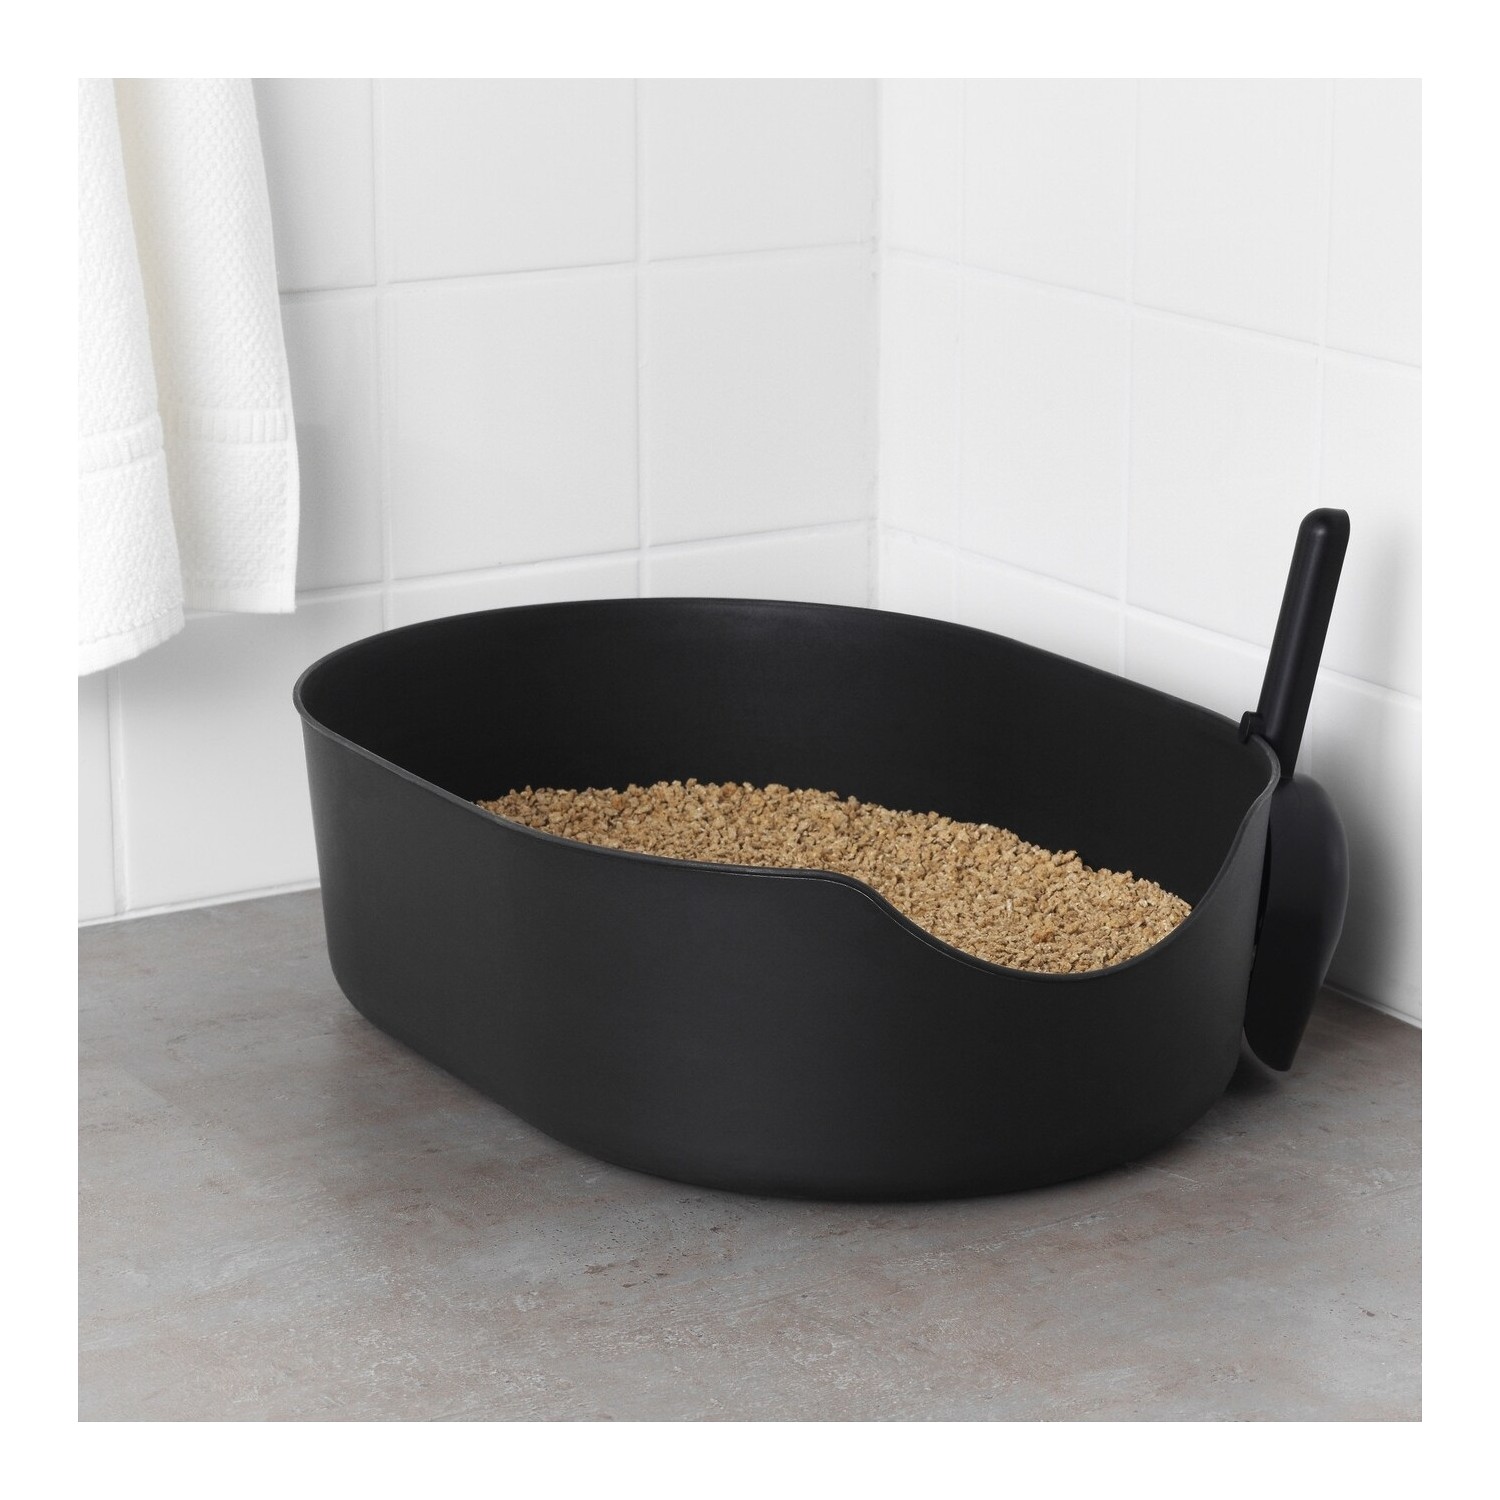 Barbun Lurvig Kedi Kumluğu Tuvalet Kum Kabı Siyah Fiyatı